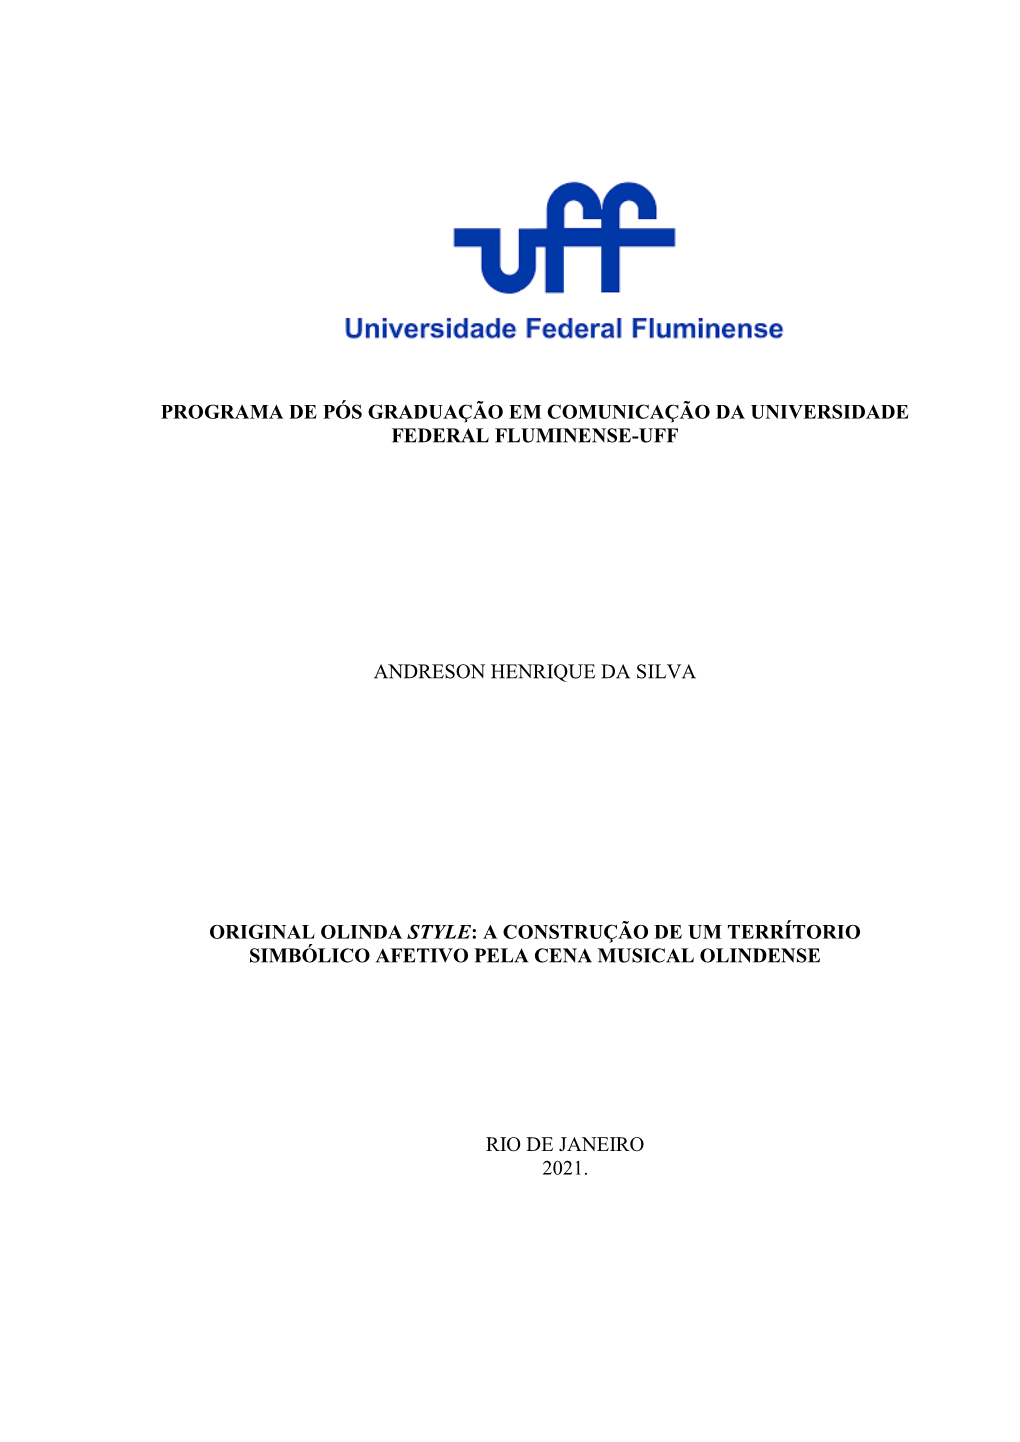 Programa De Pós Graduação Em Comunicação Da Universidade Federal Fluminense-Uff Andreson Henrique Da Silva Original Olinda